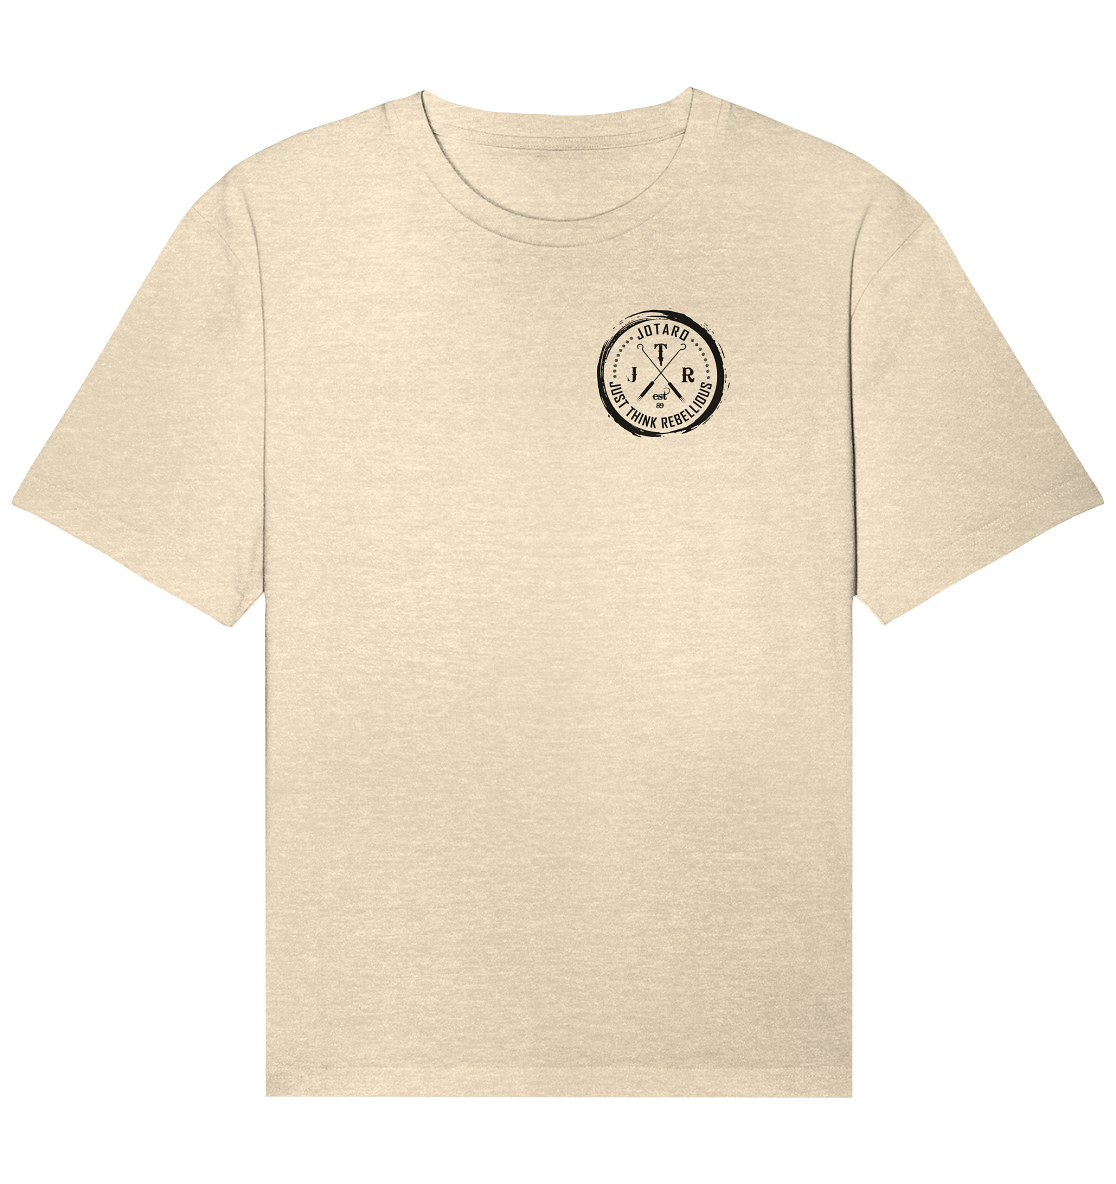 JTR Basics - Organic Relaxed Shirt